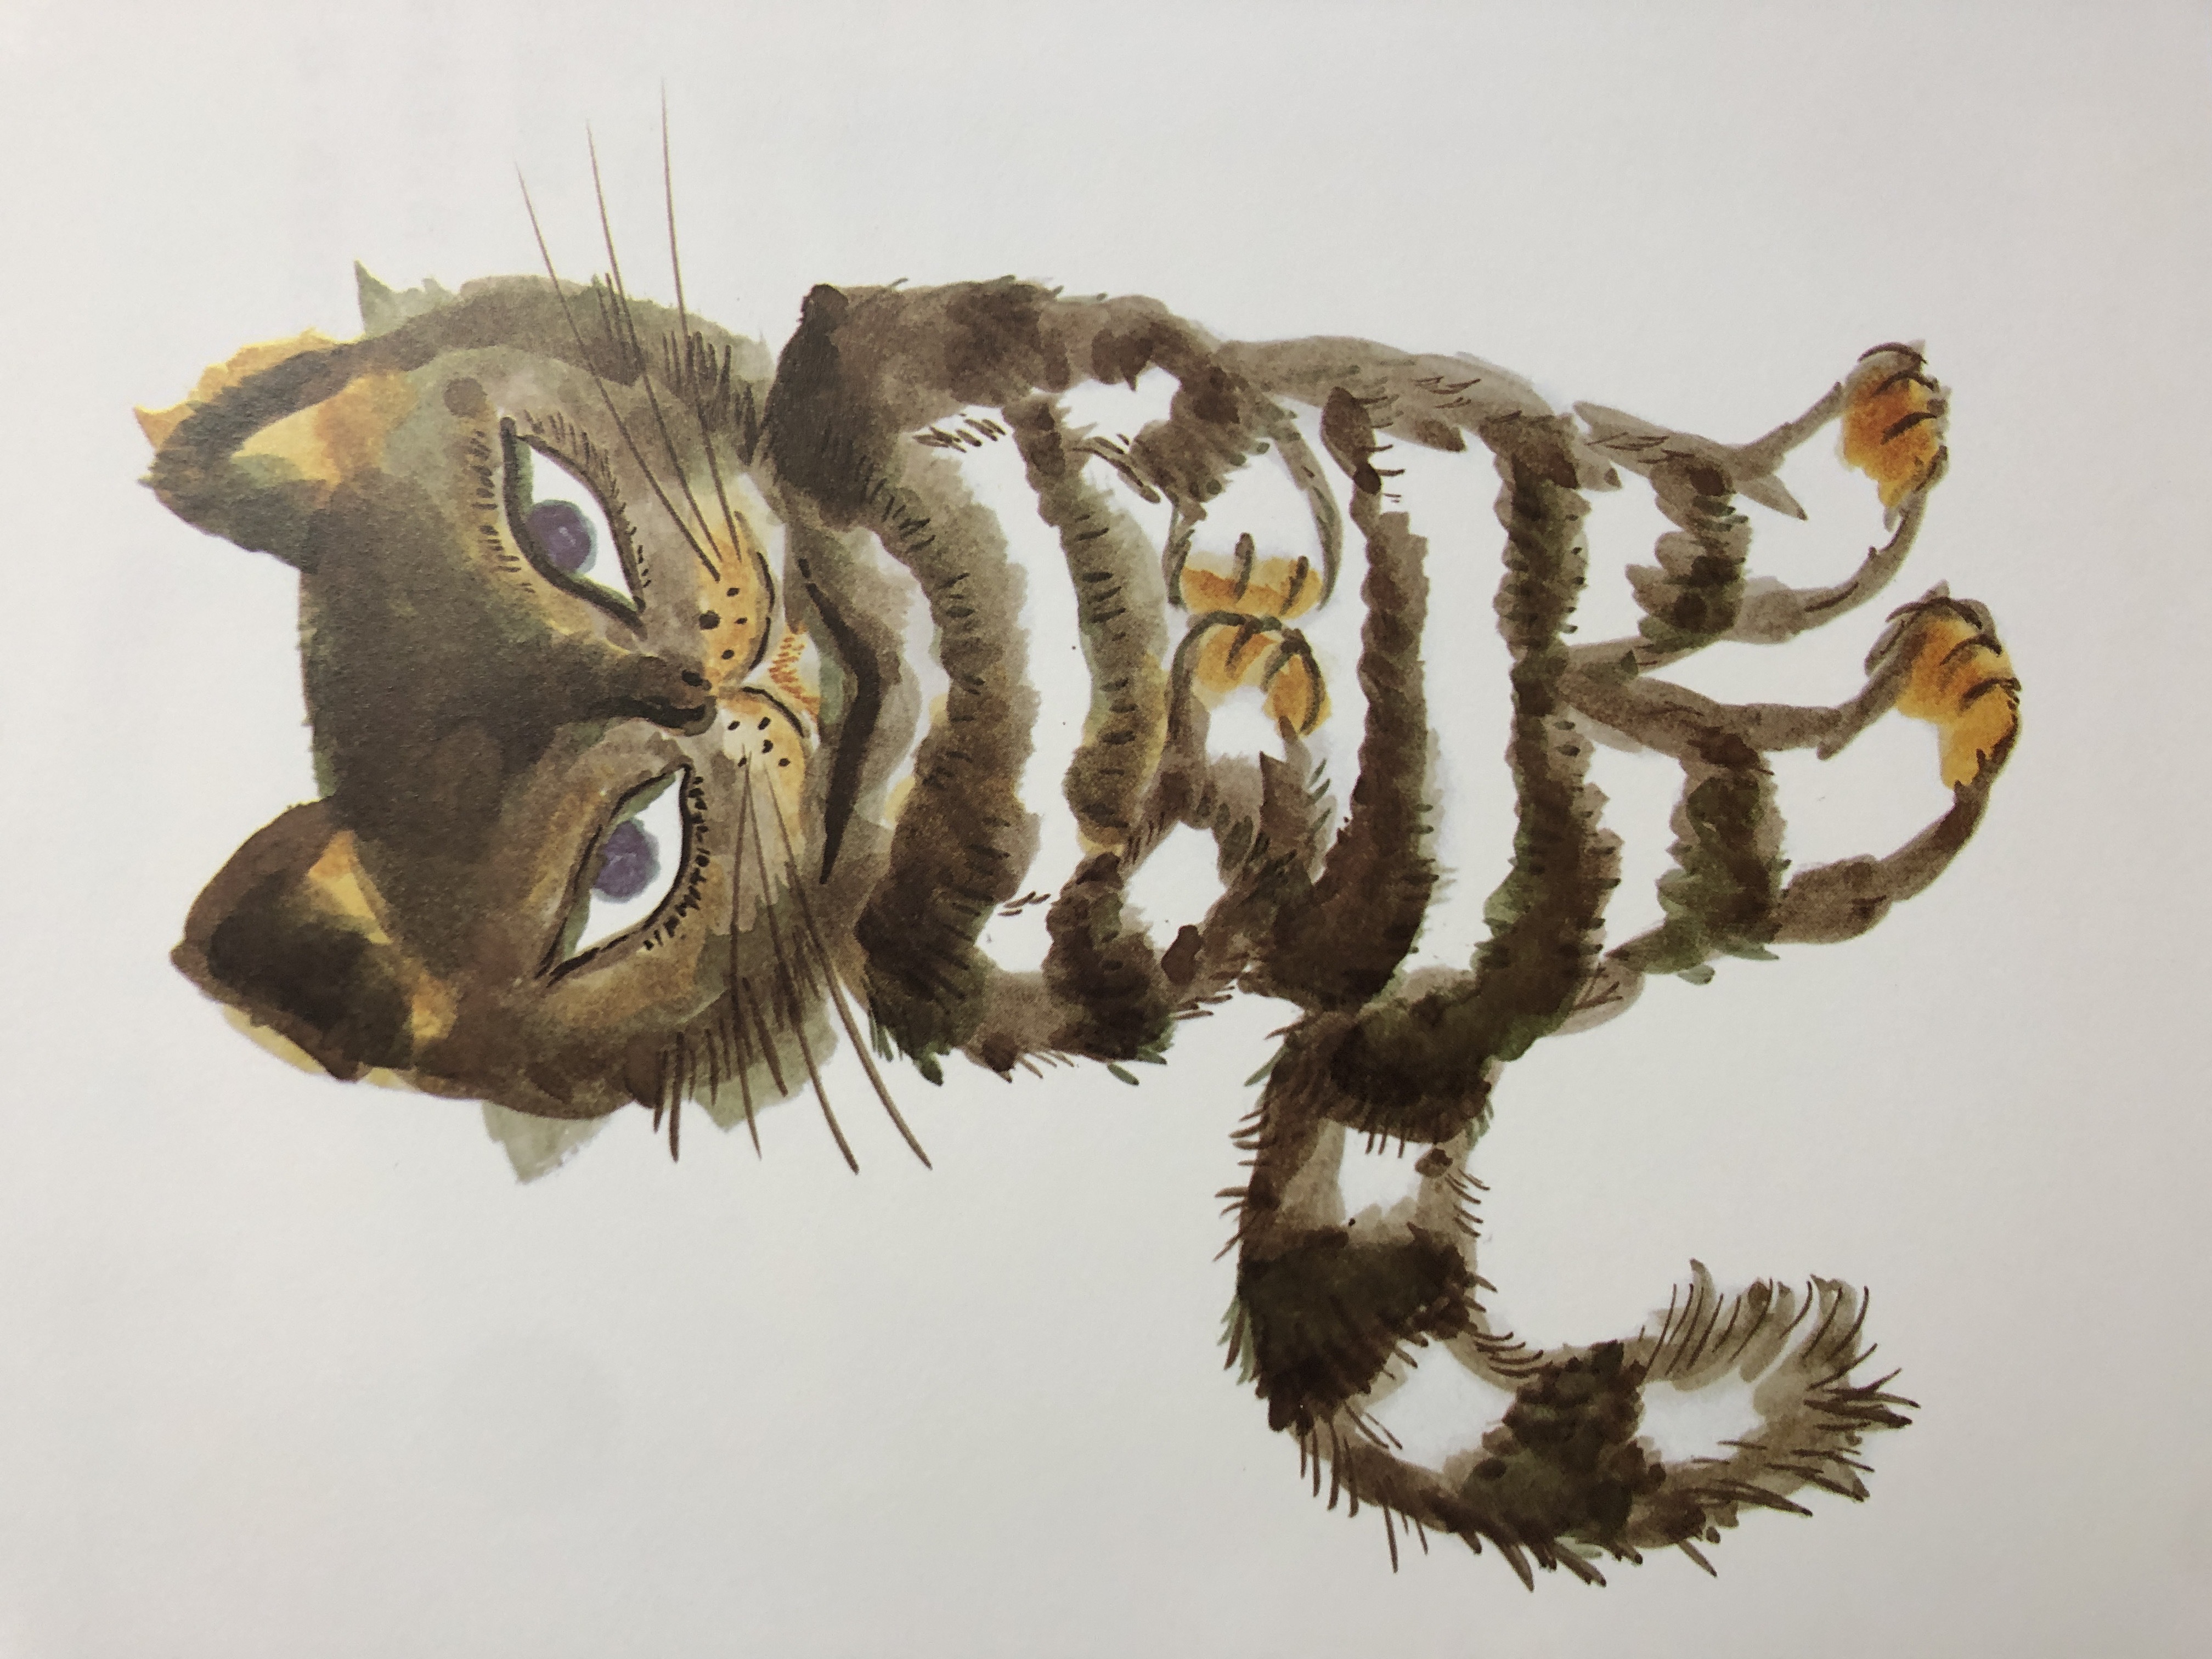 圖說：日本繪本界的名貓多到數不清，但人們永遠都會記得佐野洋子（1938~）的貓，不論是《活了100萬次的貓》（100万回生きたねこ，左圖），還是《我是貓耶》（おれはねこだぜ，右圖），她筆下的貓總是桀驁不馴又充滿靈氣。圖片取自《活了100萬次的貓》、《我是貓耶》內頁。